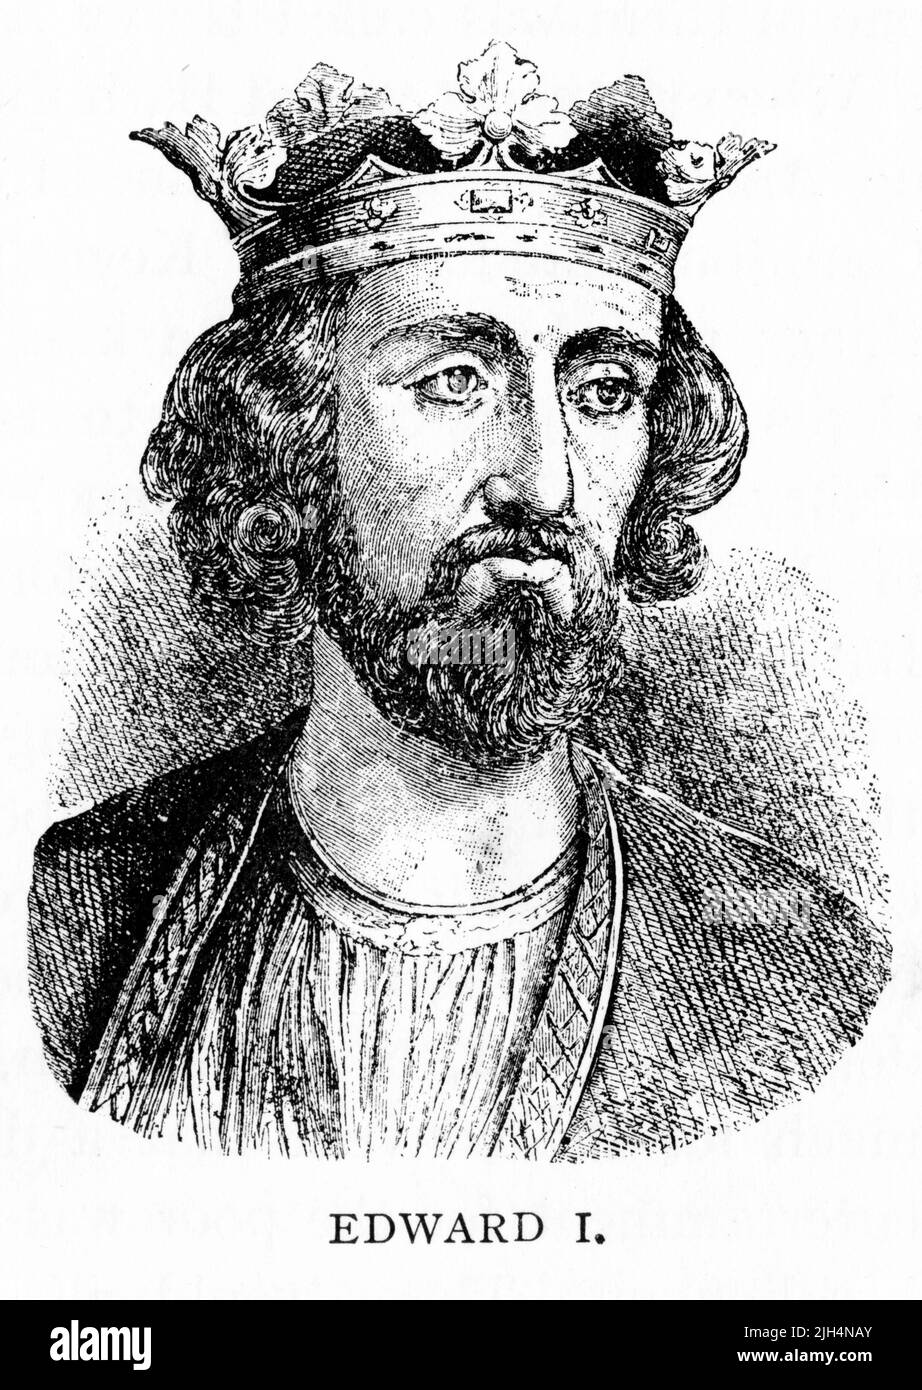 Ritratto inciso di Edoardo i (1239 – 1307), noto anche come Edoardo Longshanks e il martello degli scozzesi. Re d'Inghilterra dal 1272 al 1307. Foto Stock